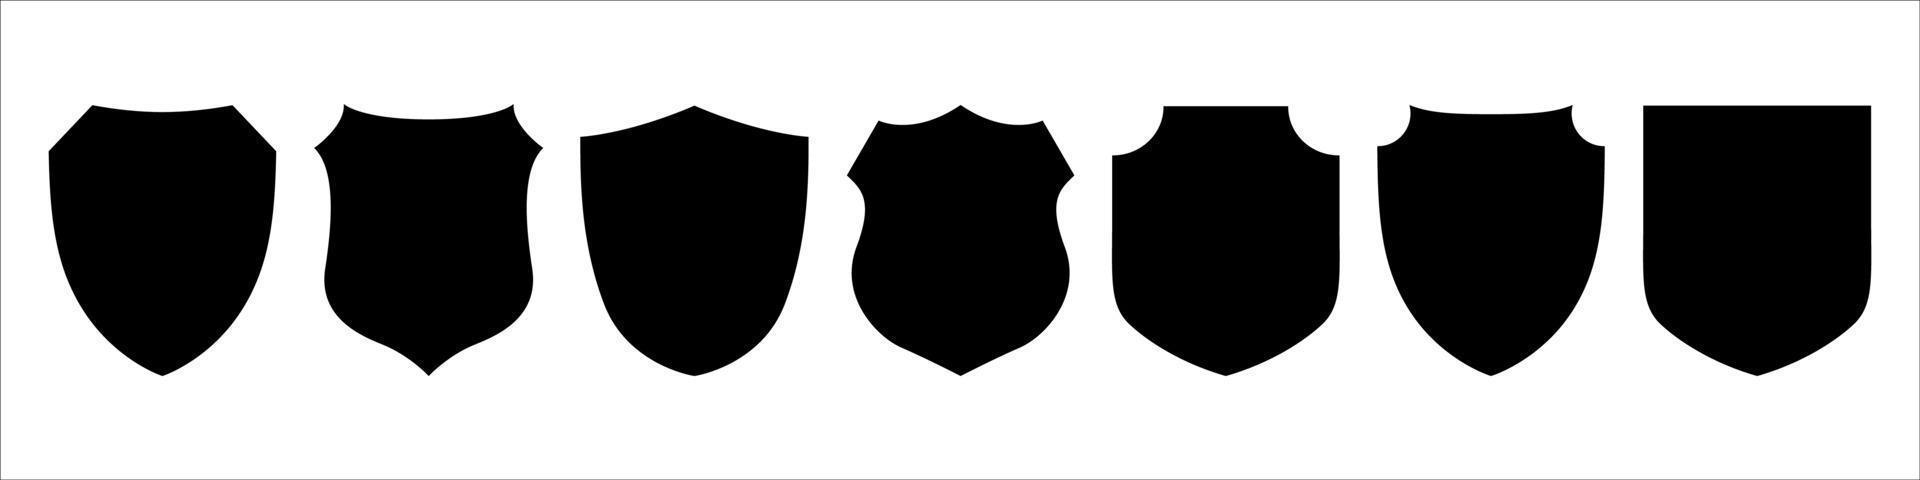 conjunto de iconos de escudo vector